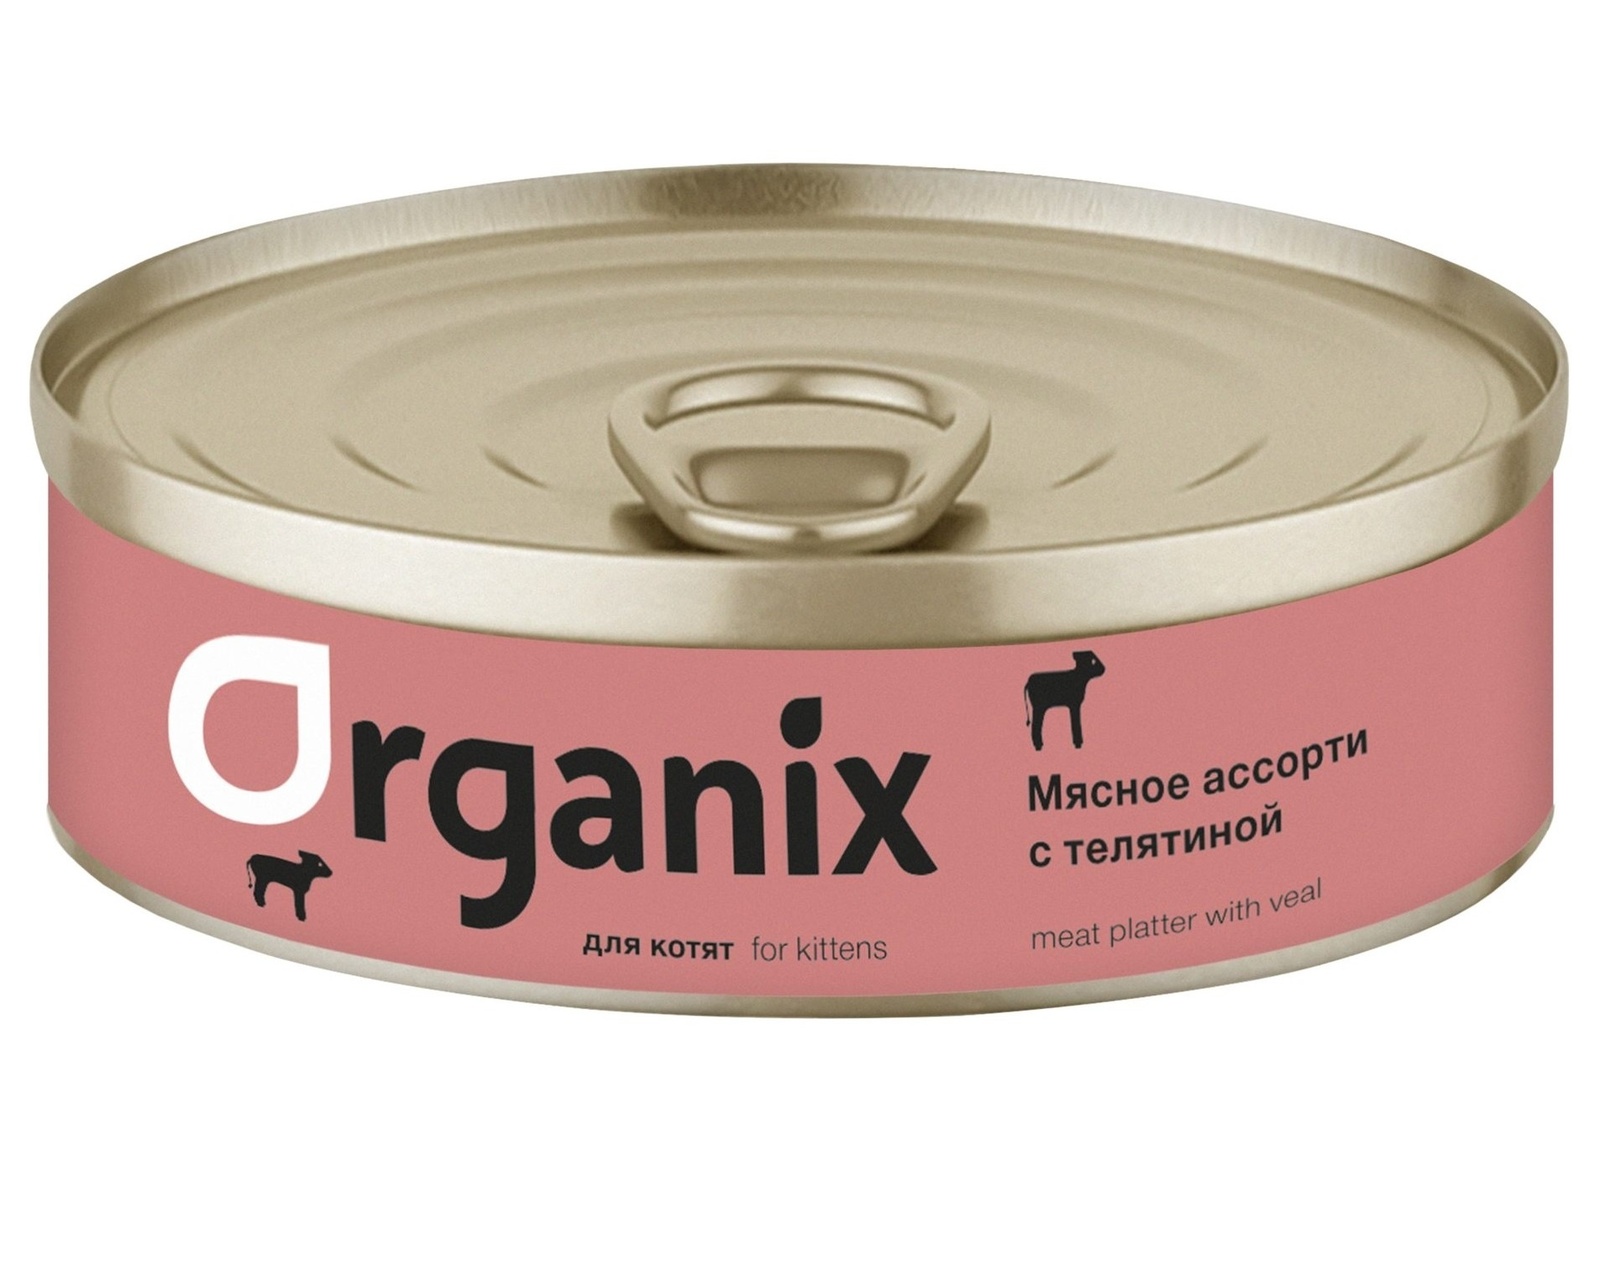 Organix консервы Organix консервы для котят Мясное ассорти с телятиной (100 г) консервы для котят ем без проблем суфле мясное ассорти 100 г